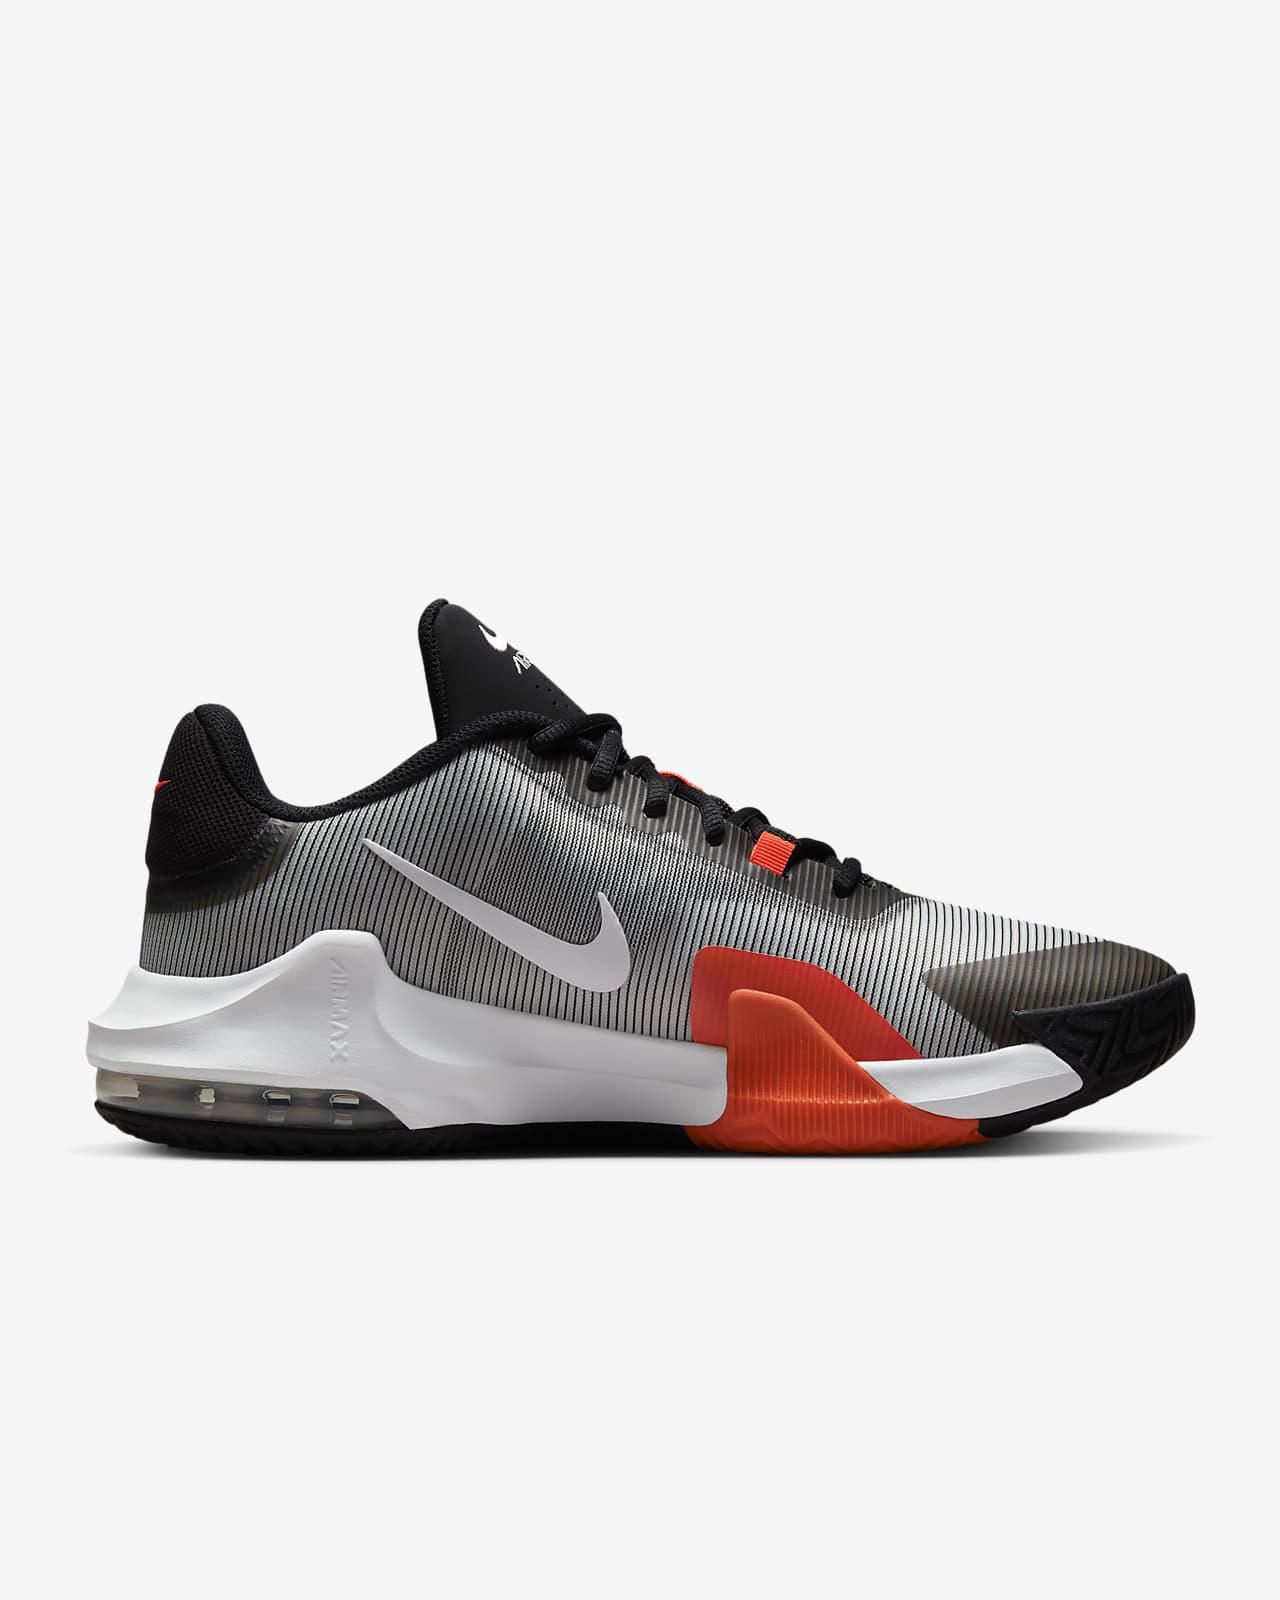 Nike Air Force 1 Black Light Crimson Sneaker Review & On Feet 